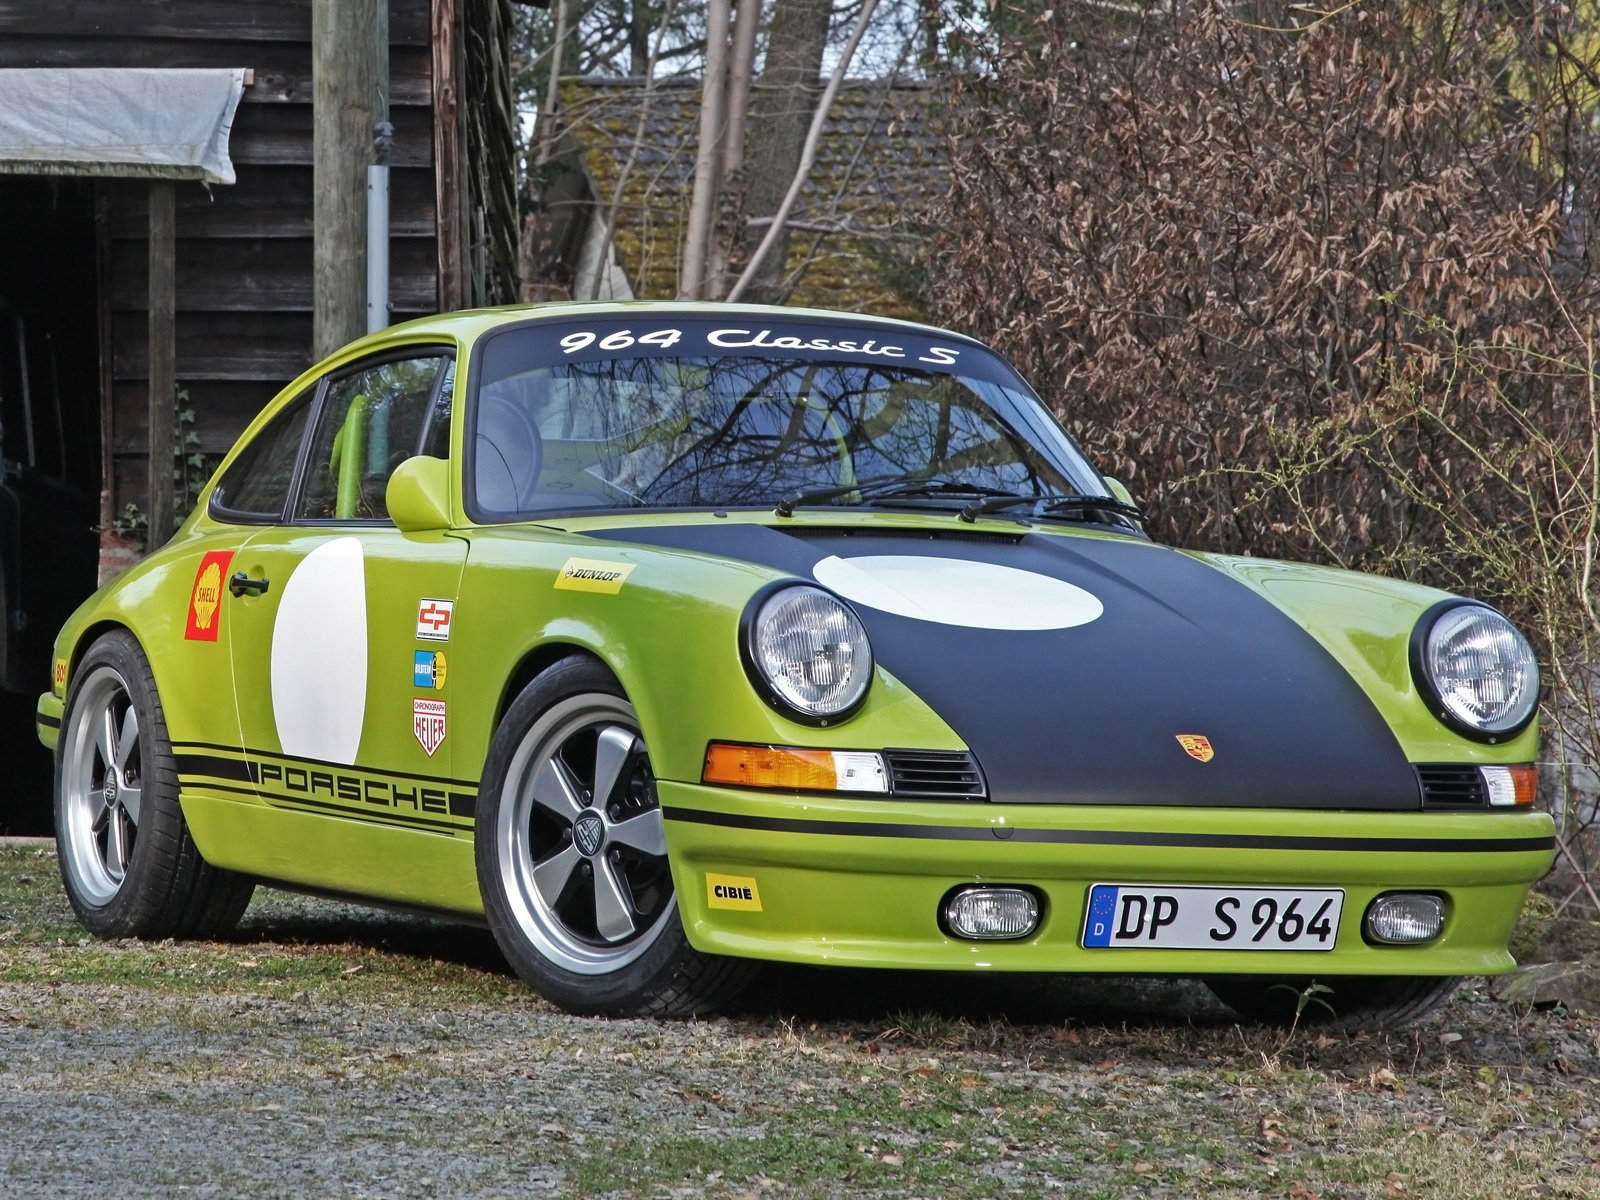 2014, D , Motorsport, Dp964, Porsche, Classic, S,  964 , Tuning, Race, Racing Wallpaper